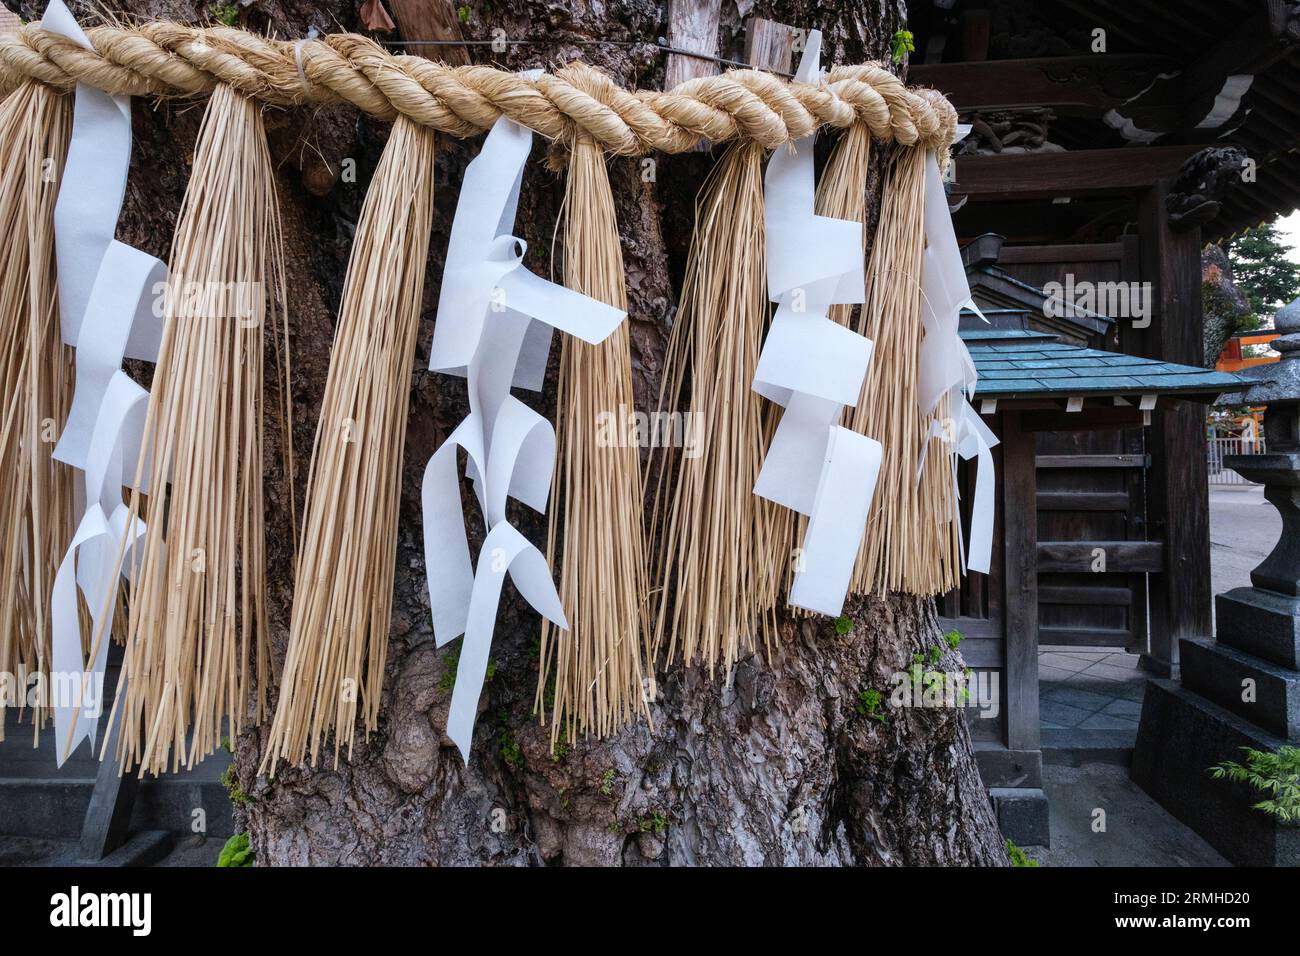 Japan, Fukuoka. Kushida Shinto-Schrein. Shimenawa Rope und Paper Streamer (Shide), die um Tree gebunden sind, bezeichnen einen Heiligen Raum, einen Ward Against Böse. Stockfoto